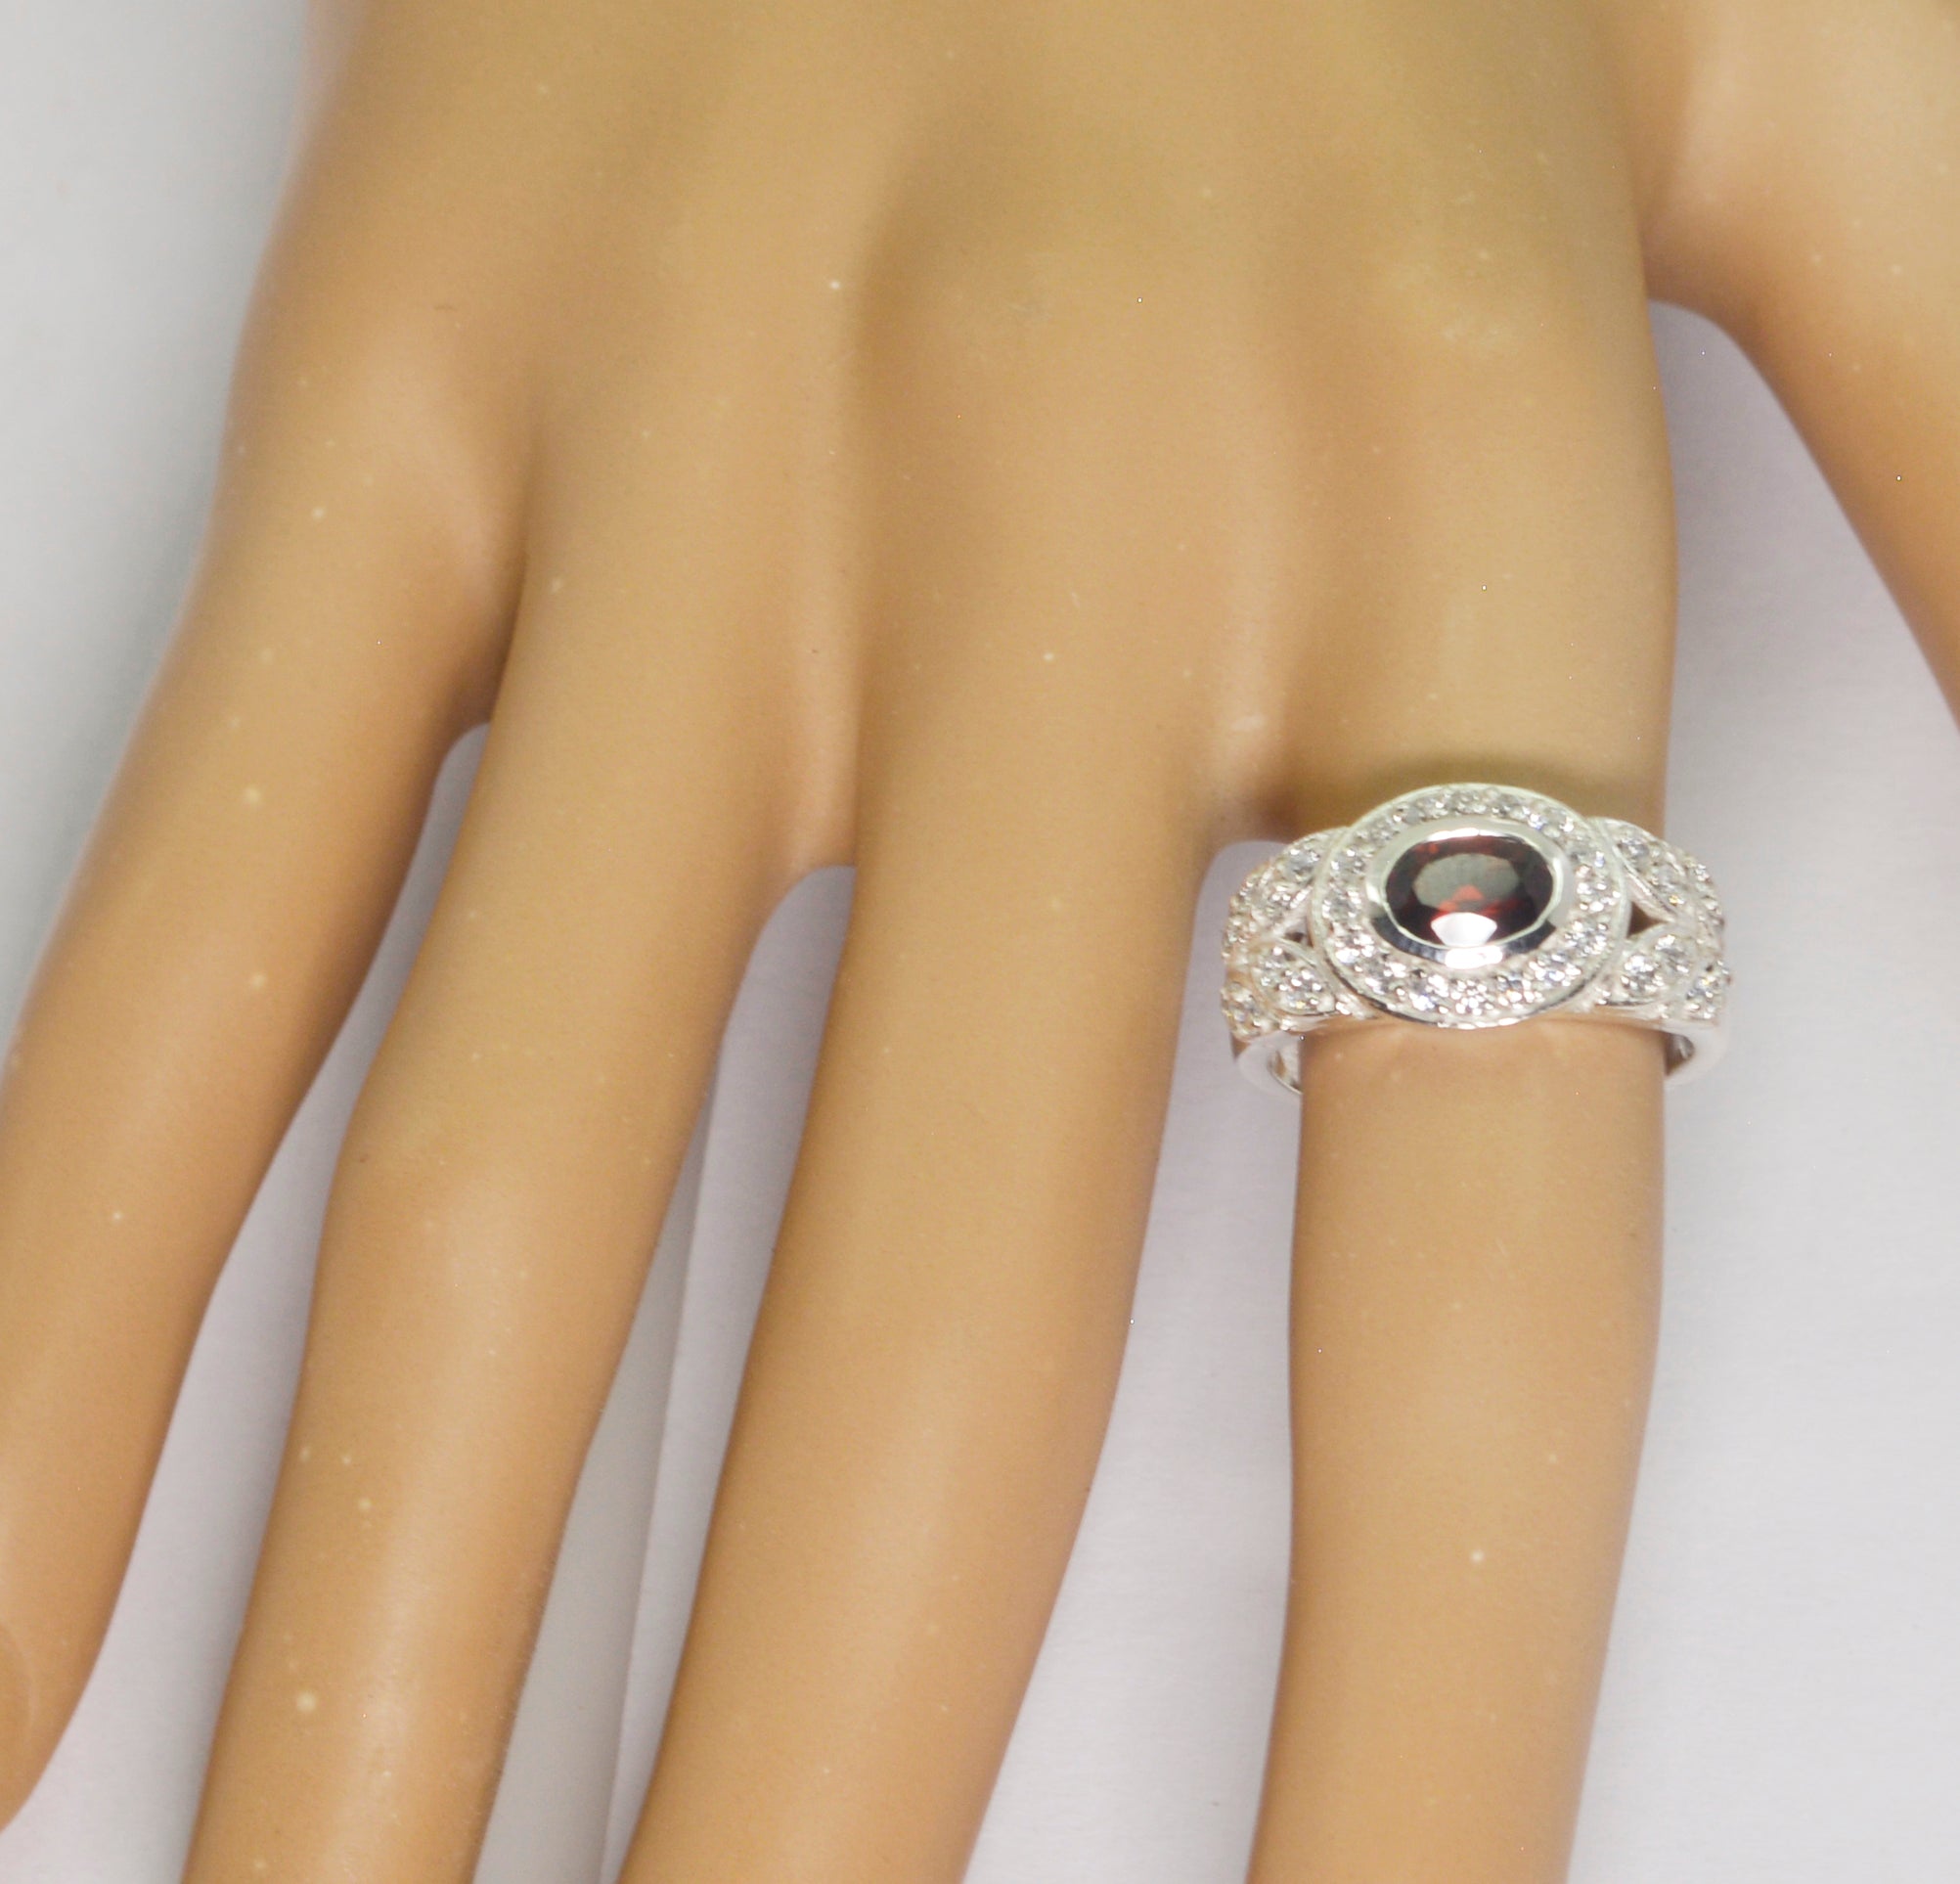 Riyo Superb Gemstones Garnet 925 Sterling Silver Rings Gem Jewelry